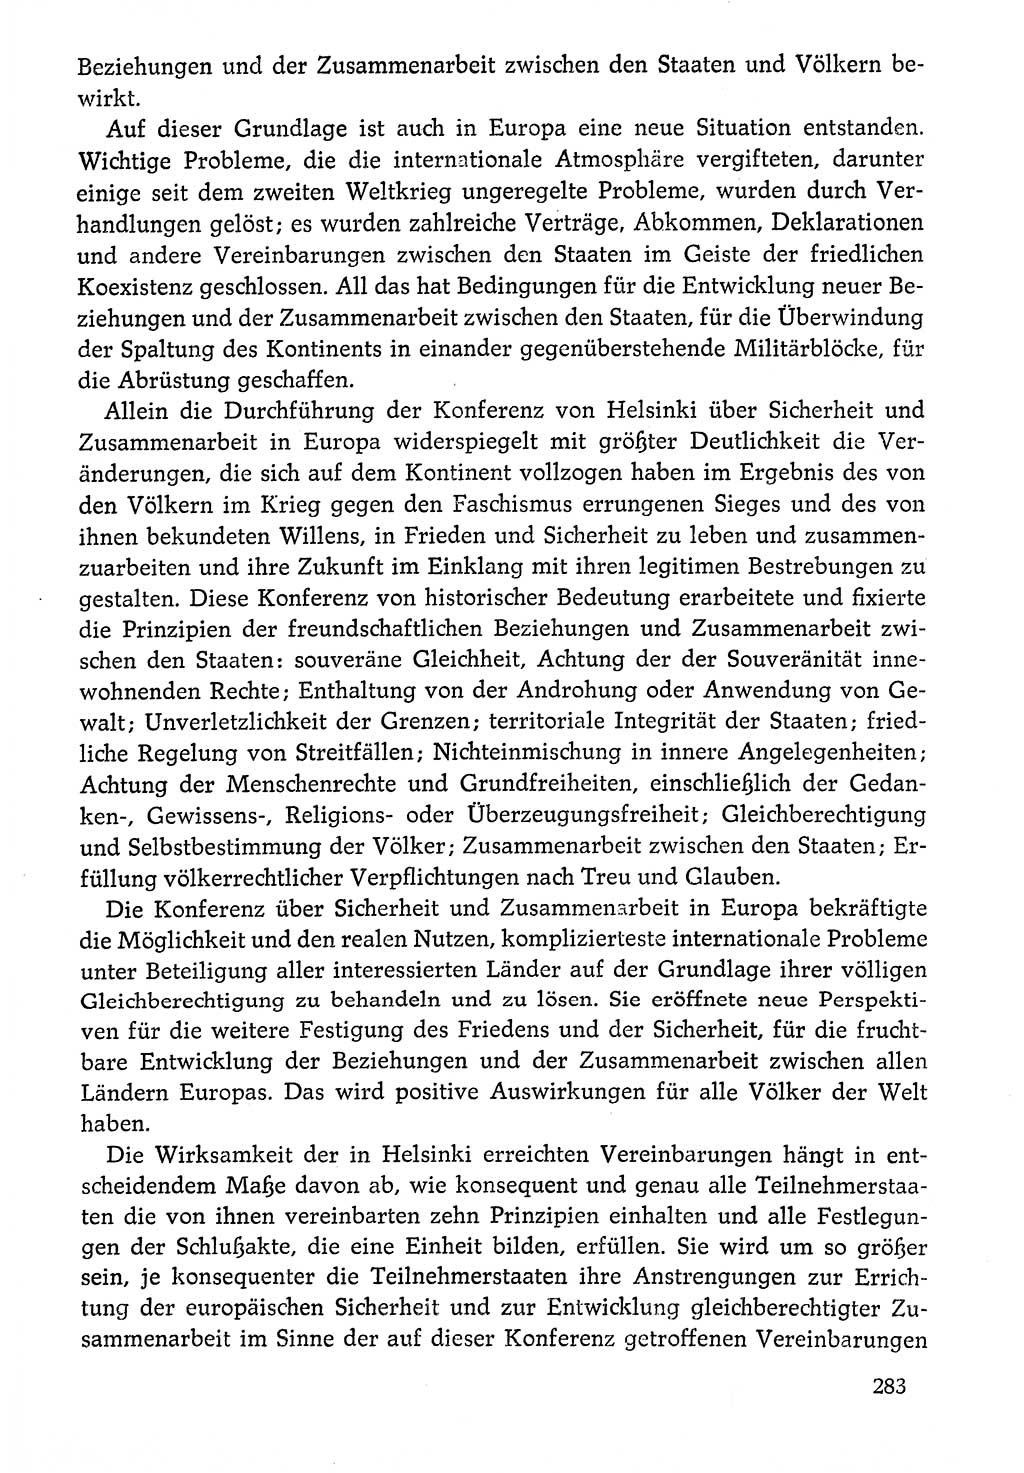 Dokumente der Sozialistischen Einheitspartei Deutschlands (SED) [Deutsche Demokratische Republik (DDR)] 1976-1977, Seite 283 (Dok. SED DDR 1976-1977, S. 283)